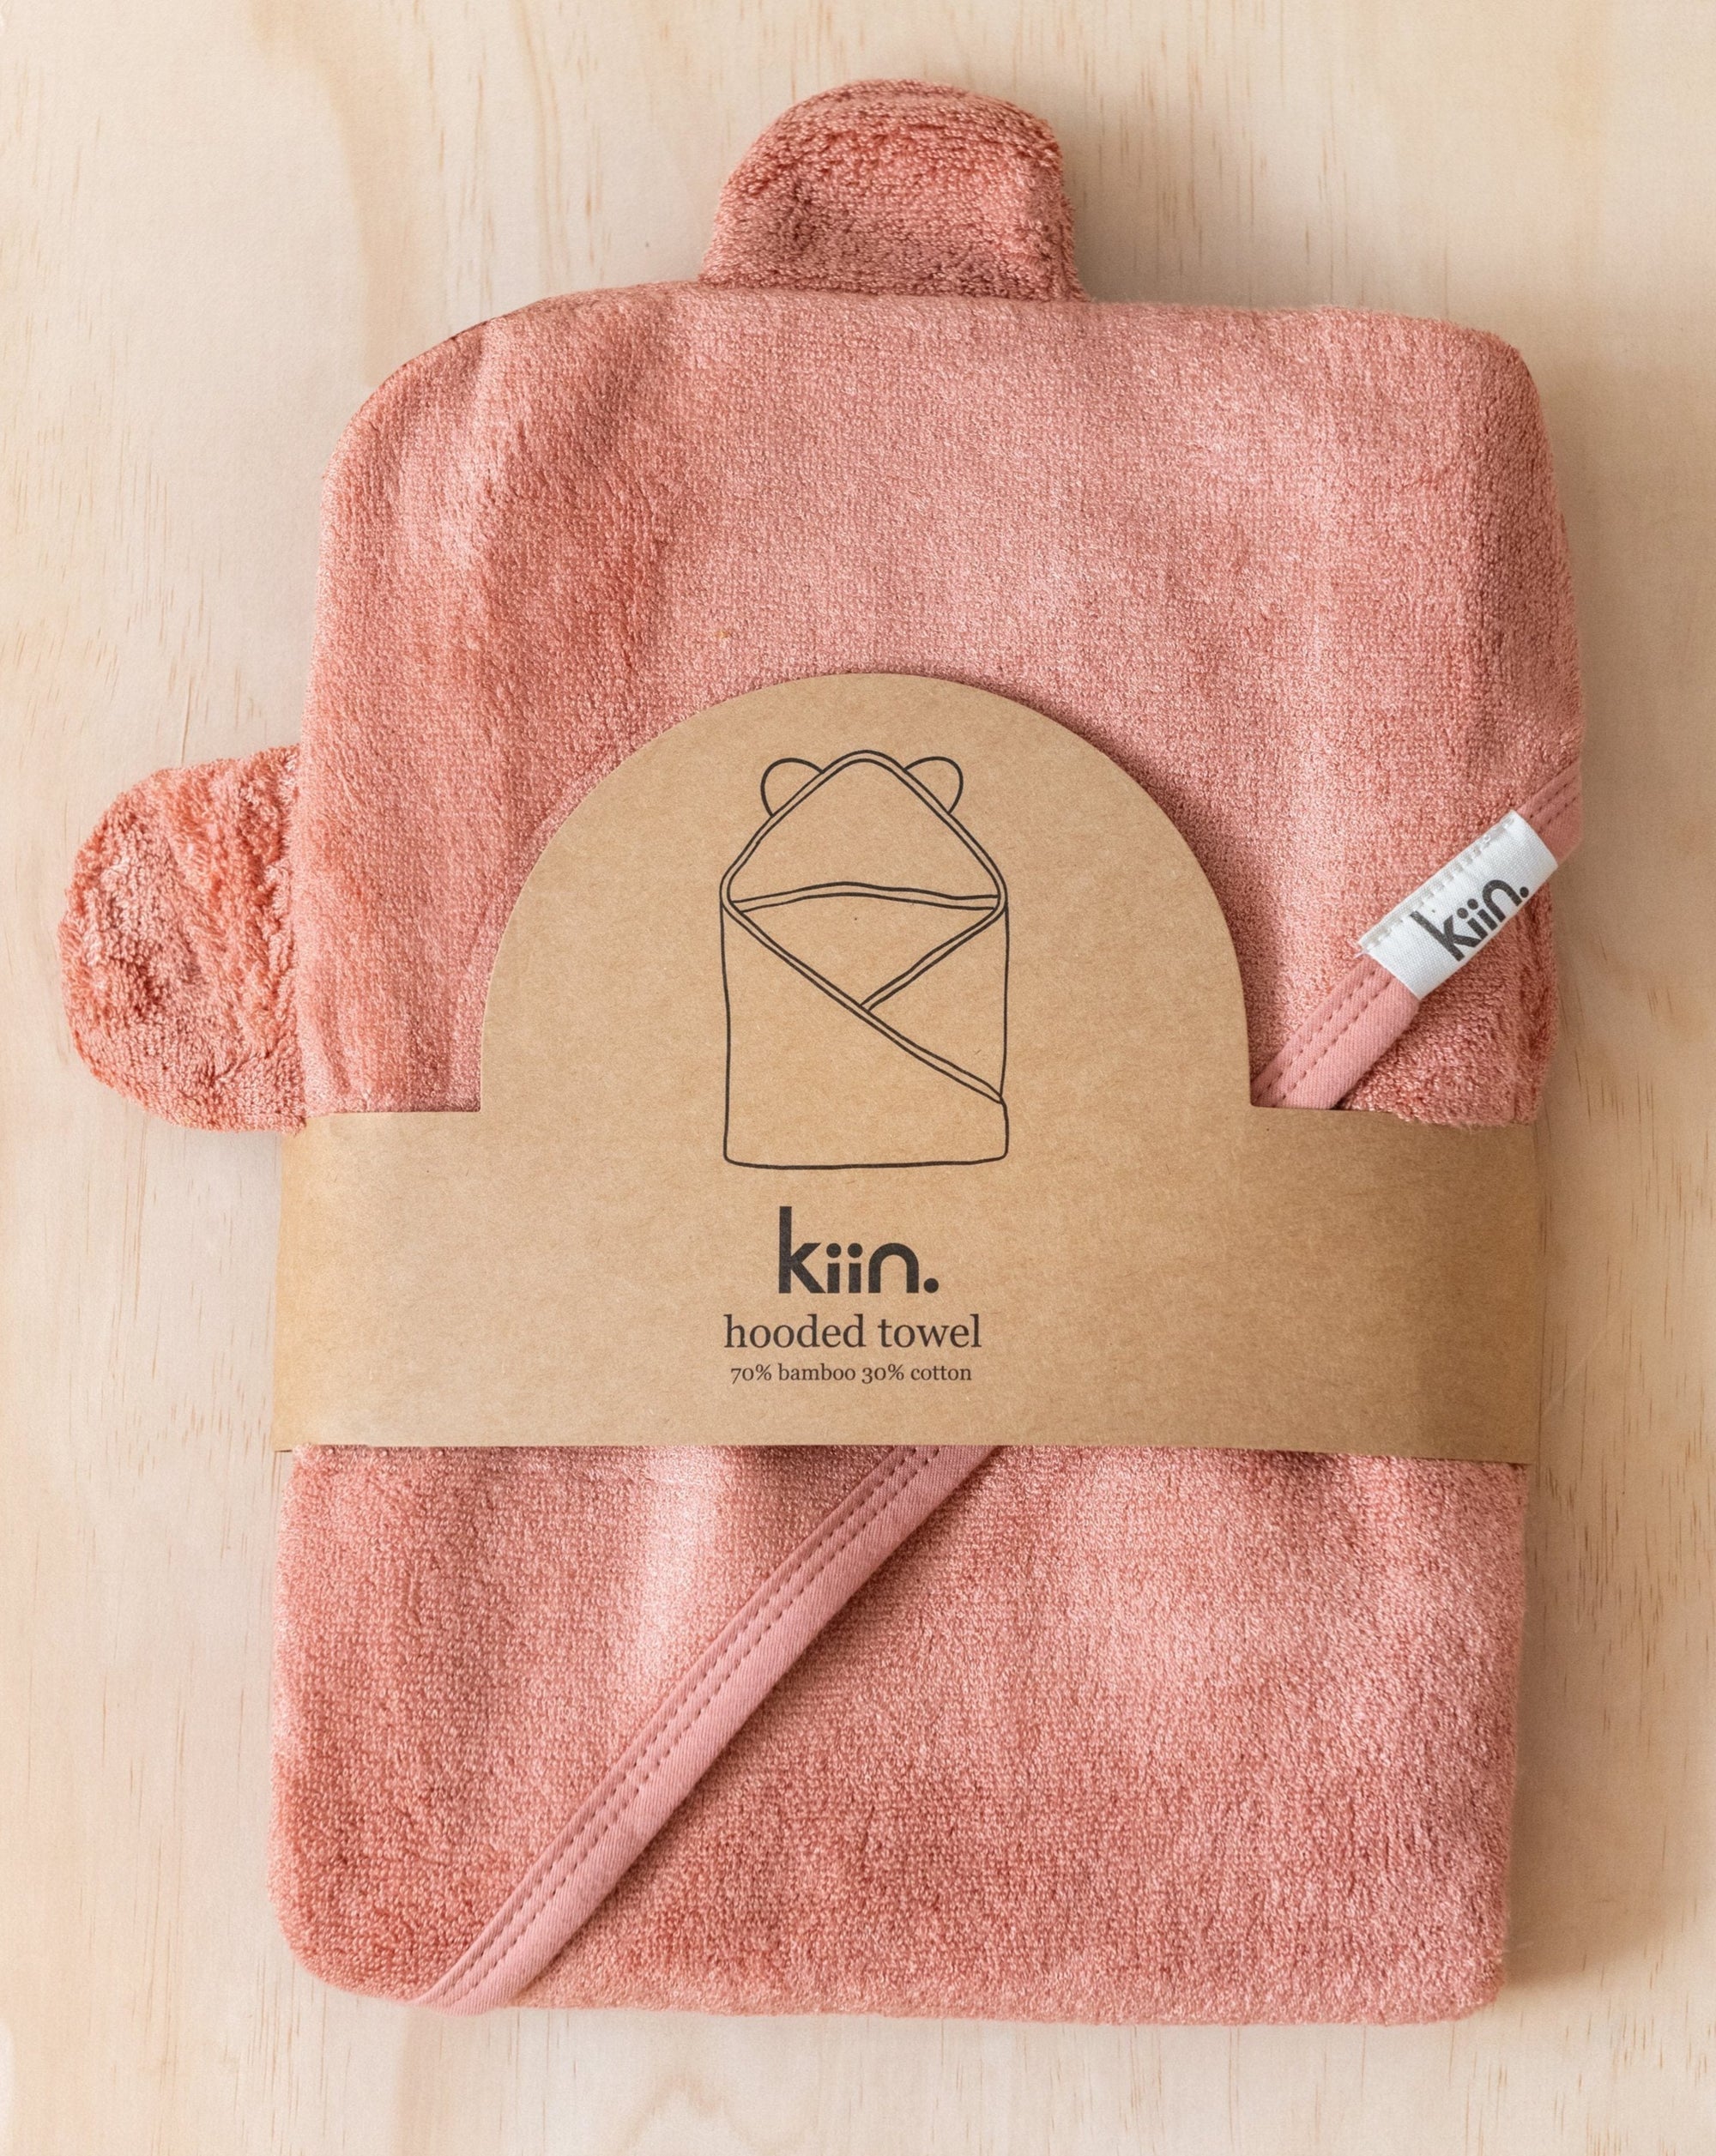 Kiin Hooded bamboo towel - angus & dudley